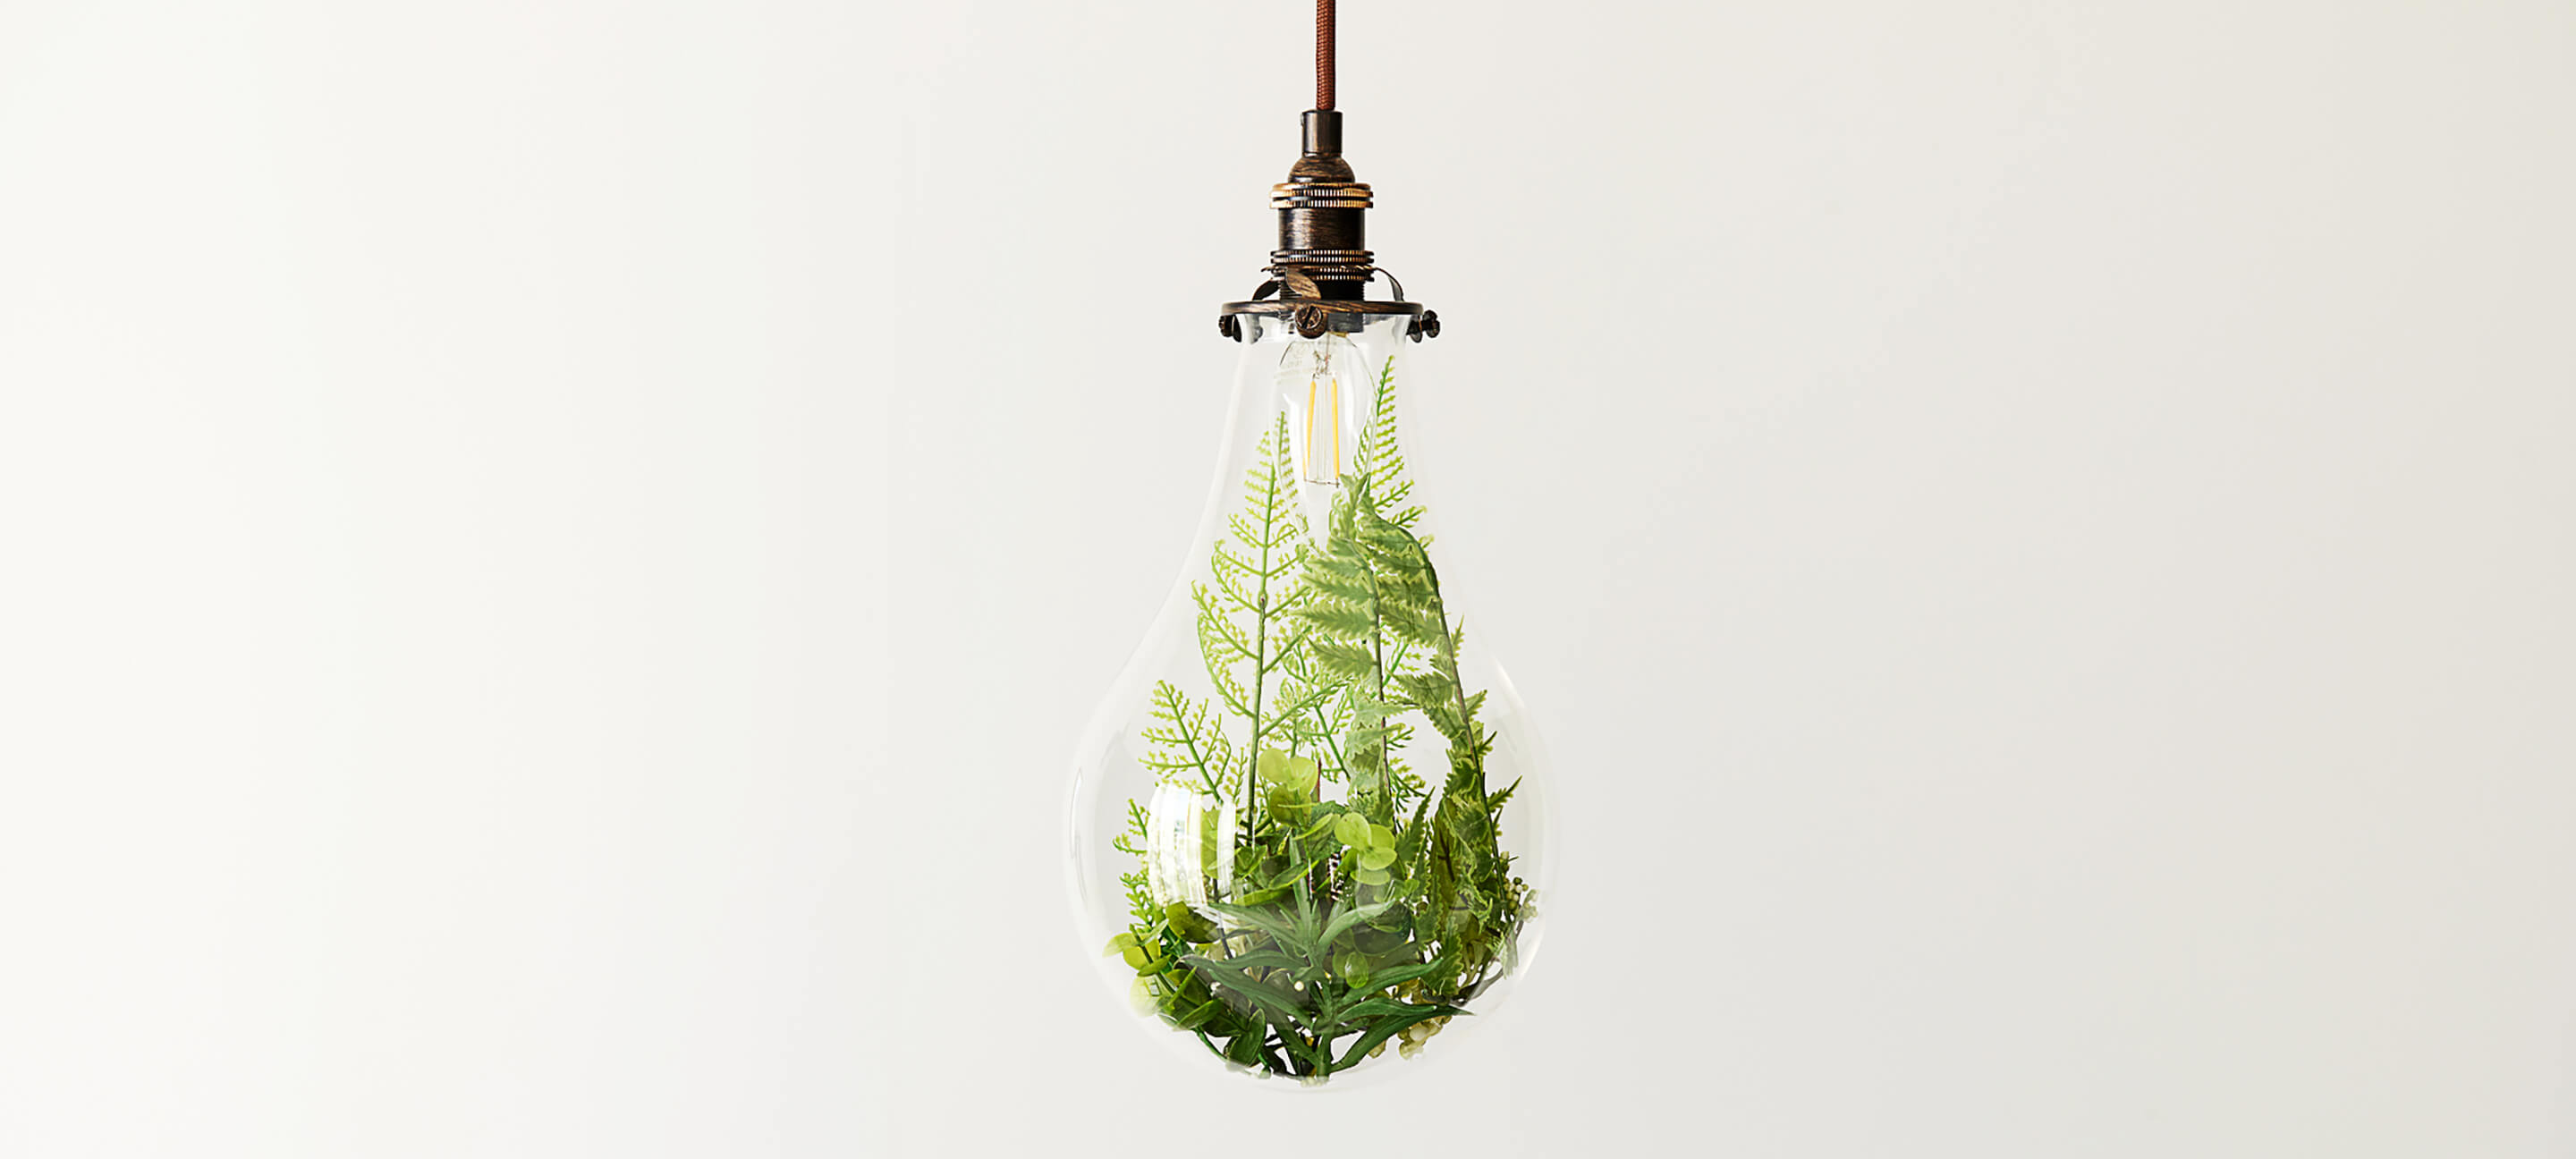 Une ampoule électrique contient un écosystème de feuillage vert.